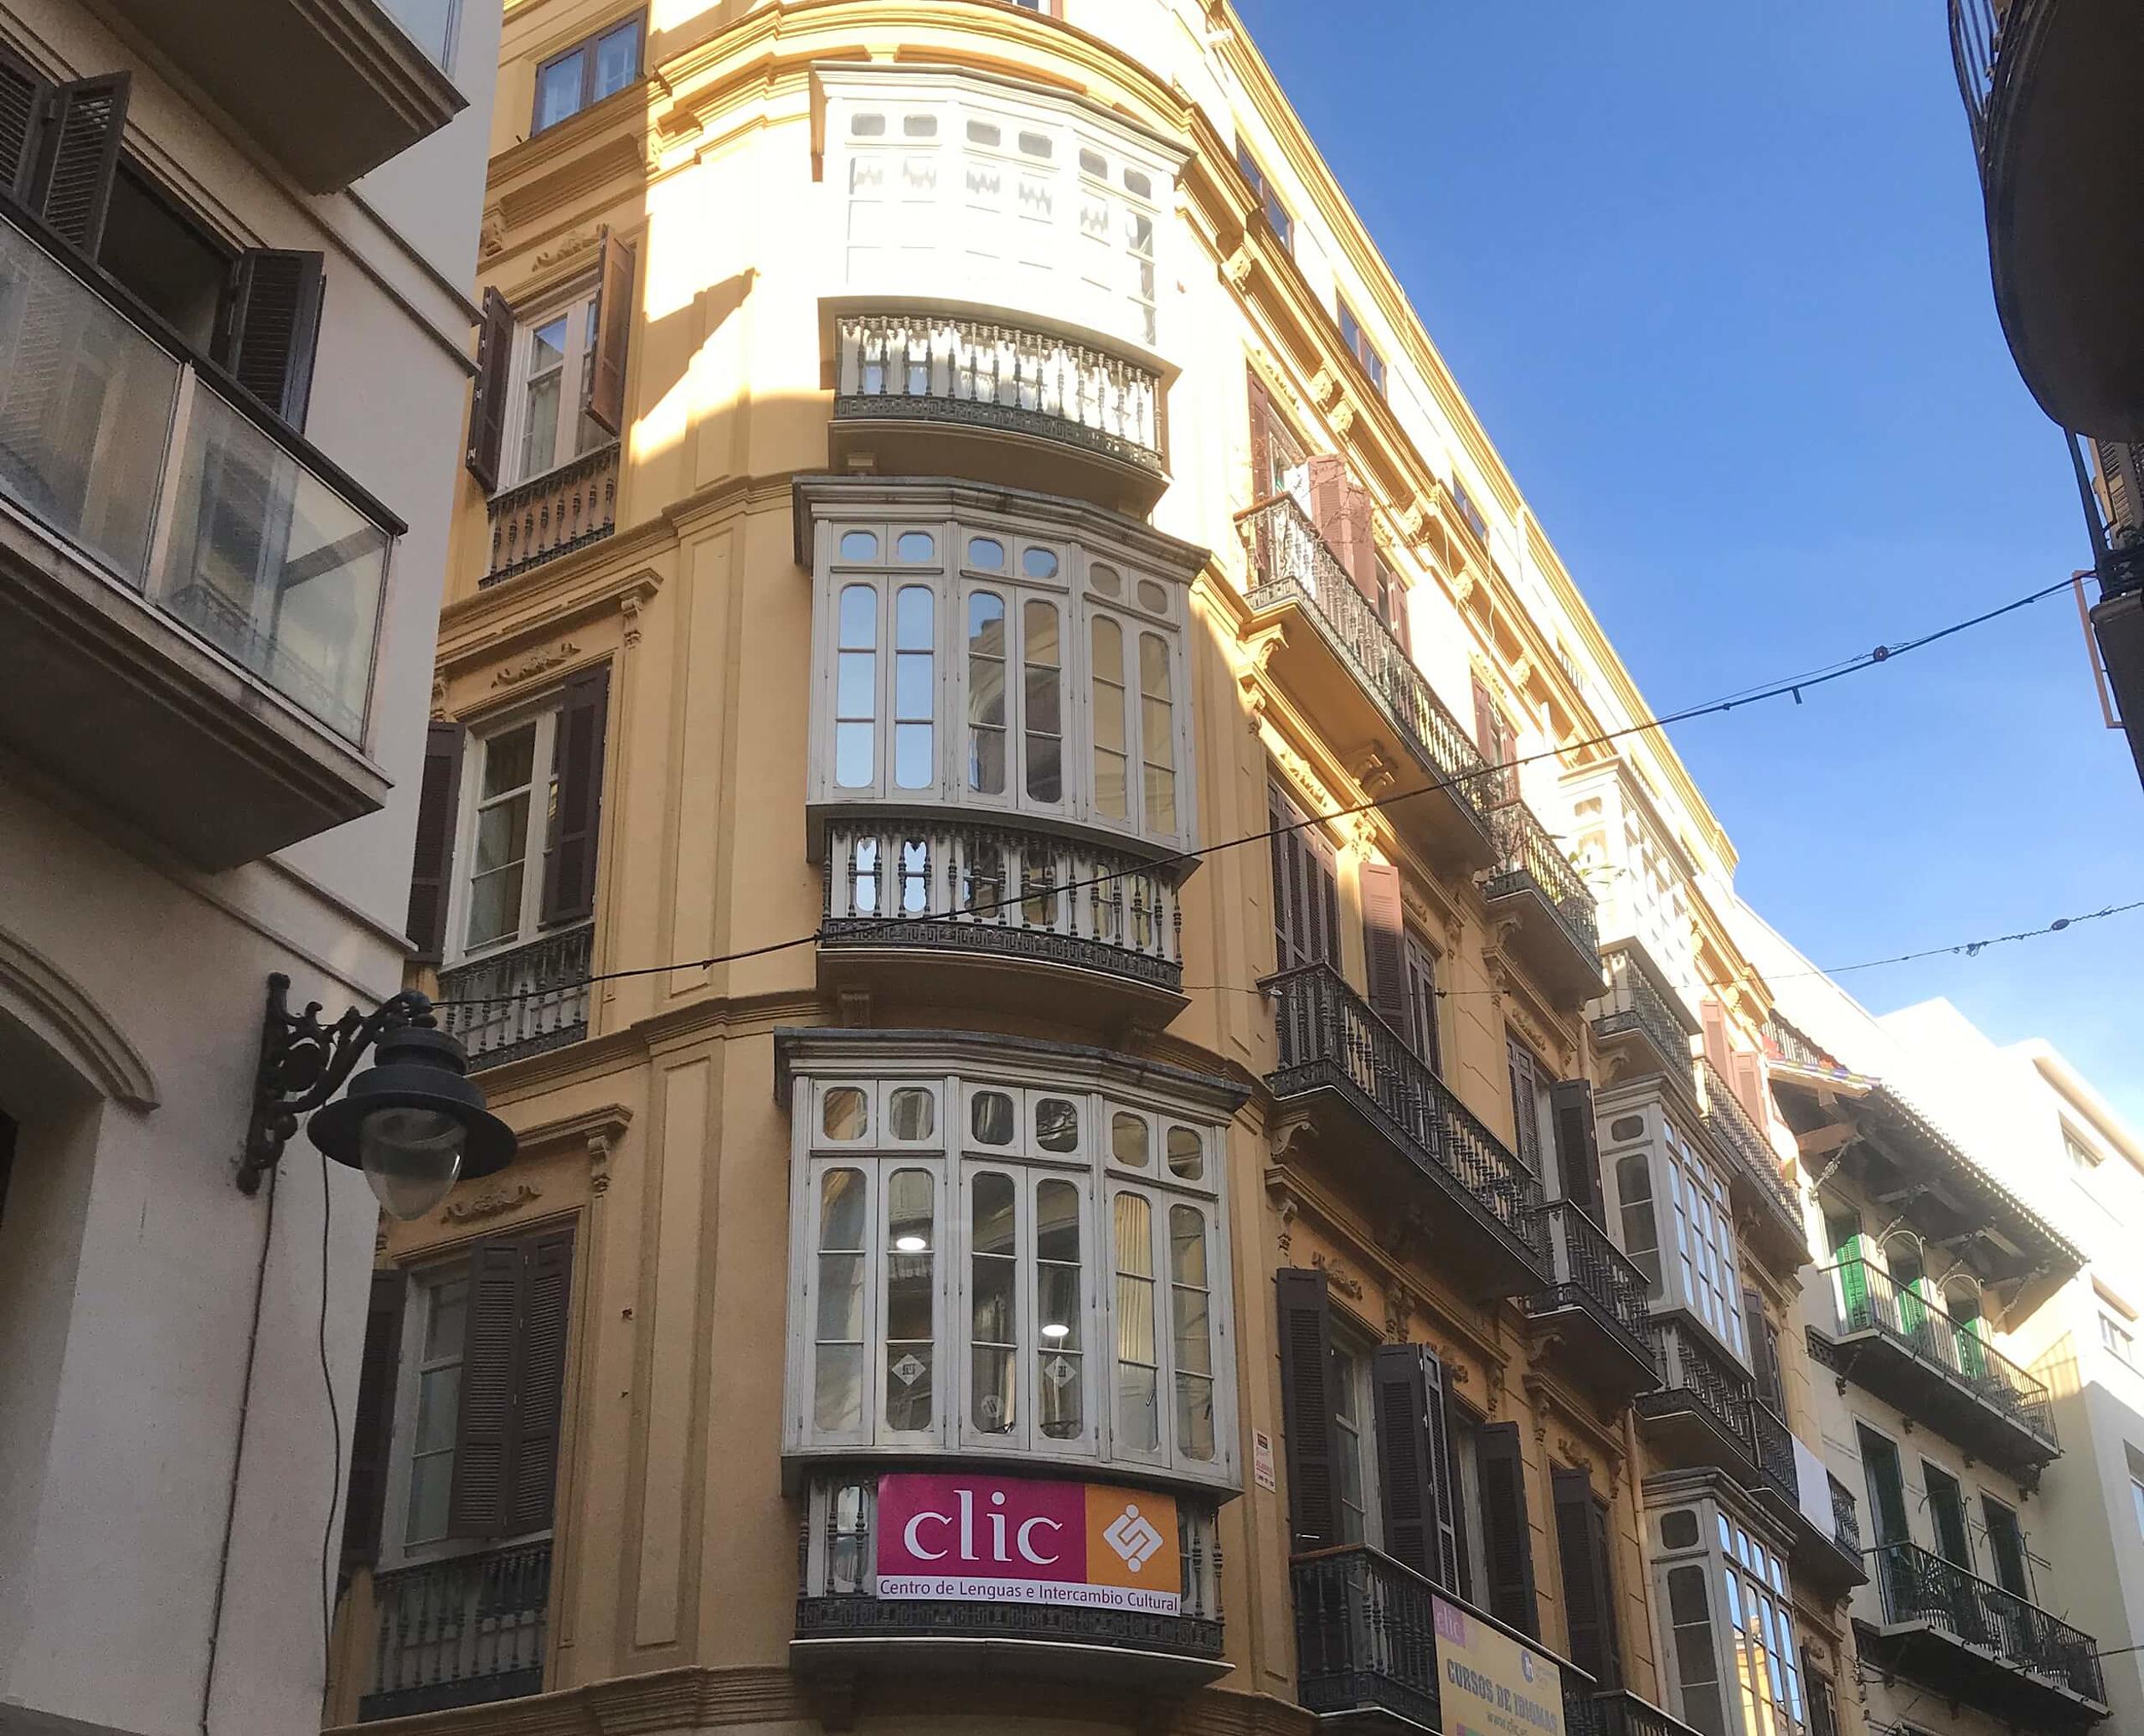 Hier finden Sie Infos zur Sprachreise zu CLIC Málaga.